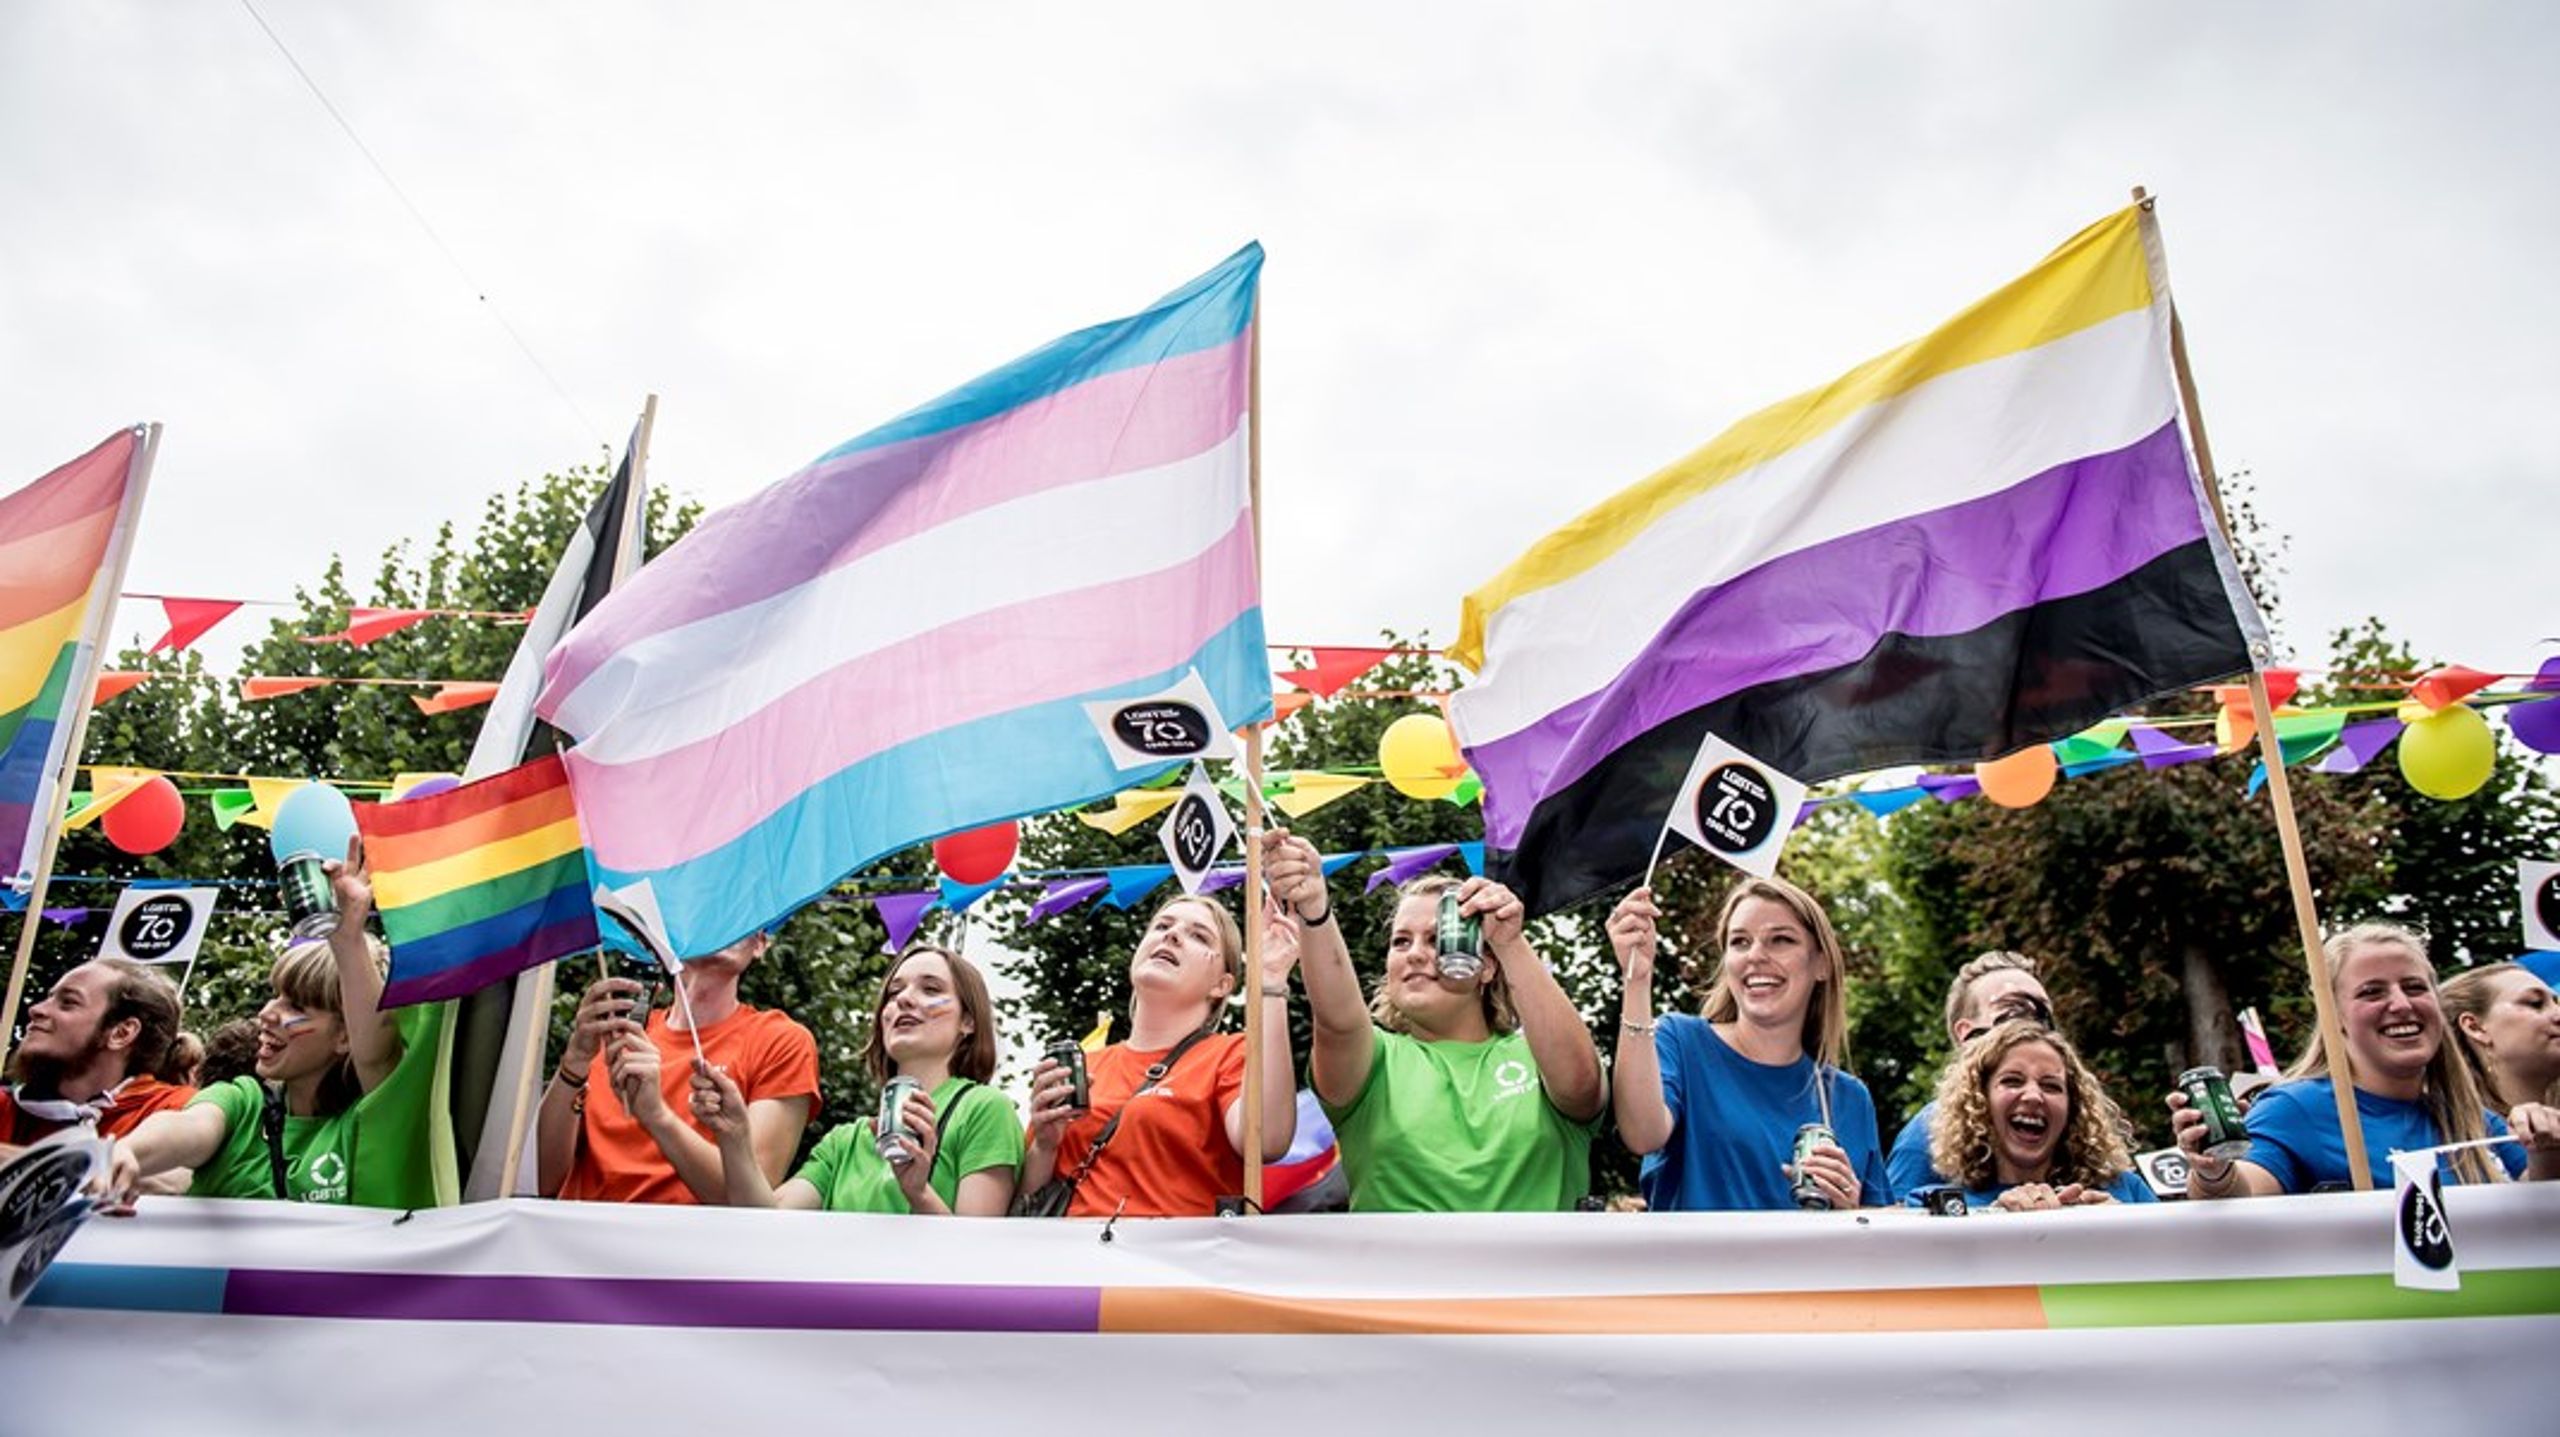 Rundt om i verden er LGBT- og transpersoners rettigheder under angreb og bliver kastet under bussen, hvis ikke bevidst påkørt. Derfor må regeringen og andre ansvarlige partier nu gå forrest og sikre rettighederne, skriver Peter Edelberg.